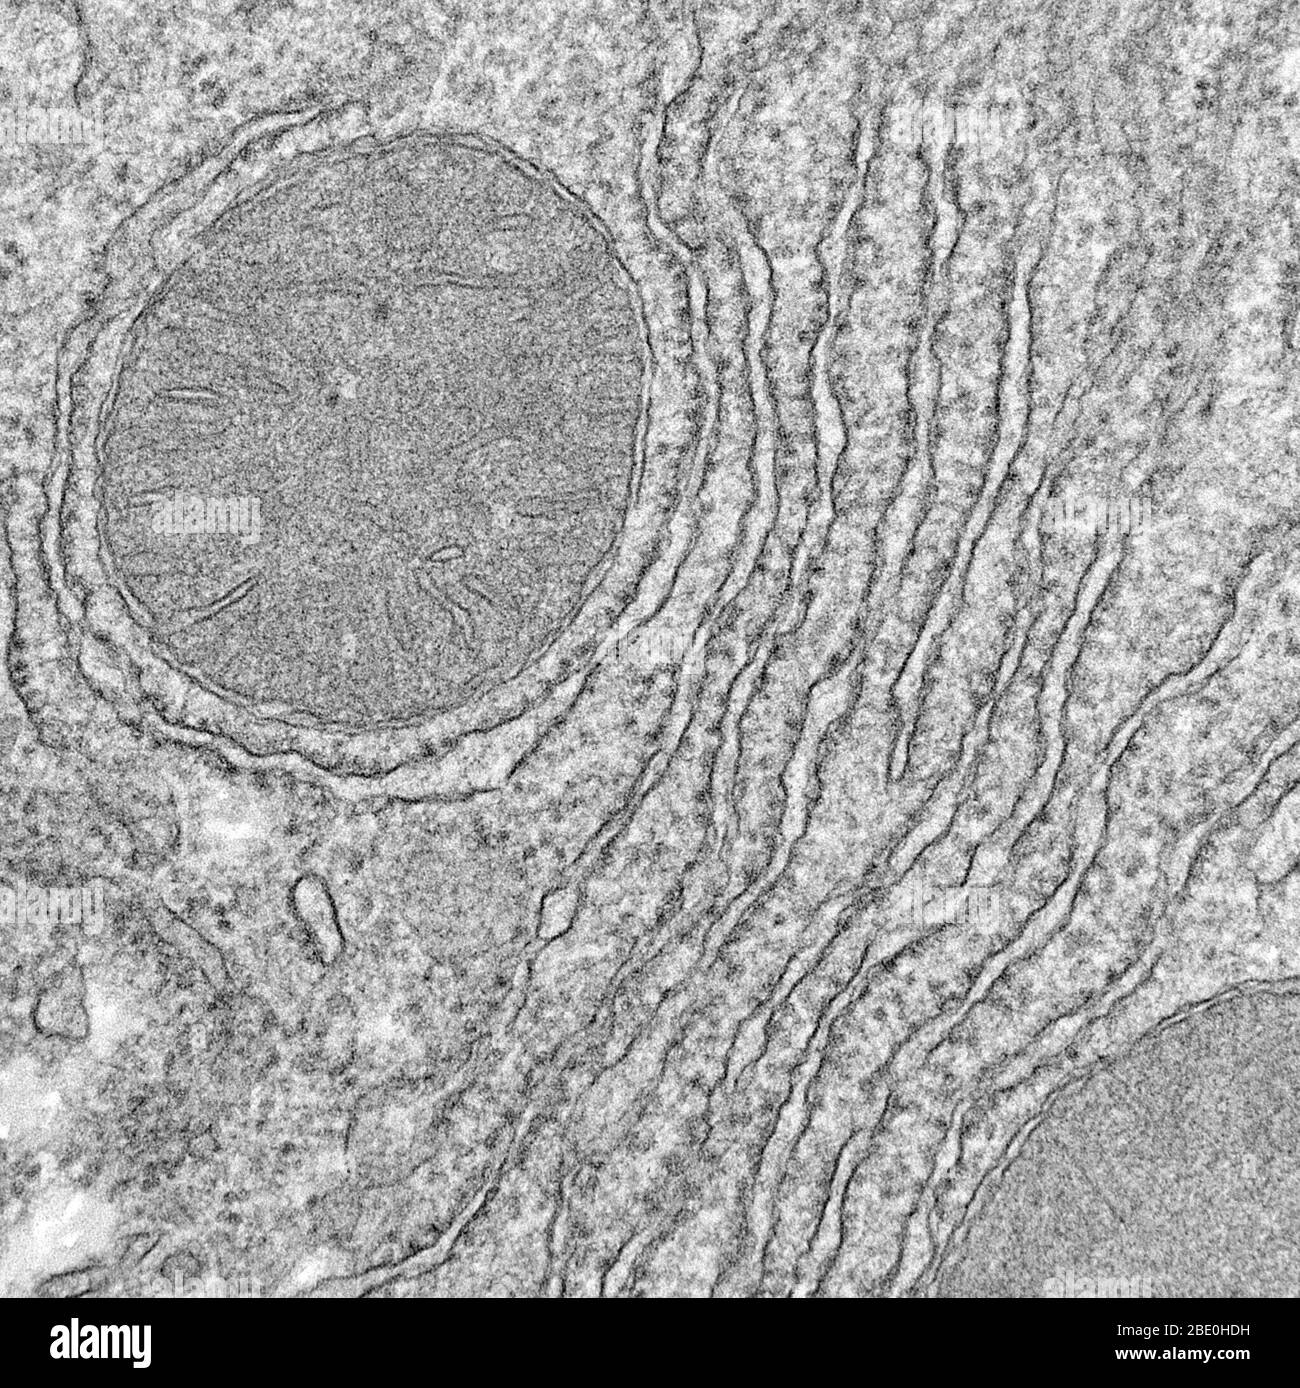 Micrografia elettronica a trasmissione (TEM) con mitocondri e reticolo endoplasmatico ruvido. Il mitocondrio (mitocondri plurali) è un organo a doppia membrana che si trova in tutti gli organismi eucariotici. I mitocondri generano la maggior parte dell'apporto cellulare di adenosina trifosfato (ATP), utilizzato come fonte di energia chimica. Se non specificamente colorati, non sono visibili. Oltre a fornire energia cellulare, i mitocondri sono coinvolti in altri compiti, come la segnalazione, la differenziazione cellulare e la morte cellulare, così come il mantenimento del controllo del ciclo cellulare e della crescita cellulare. Endoplasmatico Foto Stock